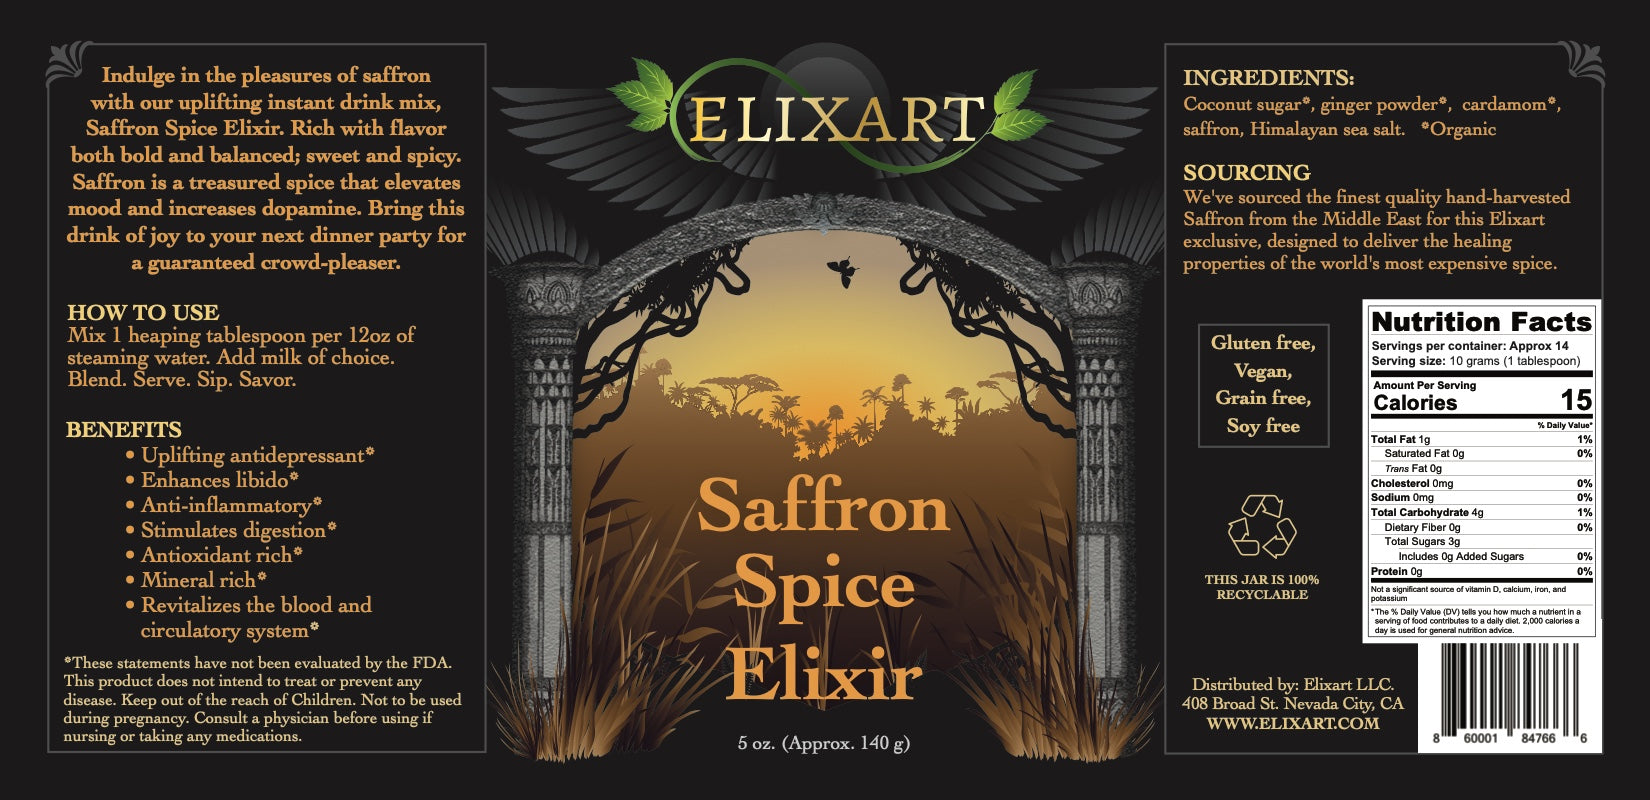 Saffron Spice Elixir